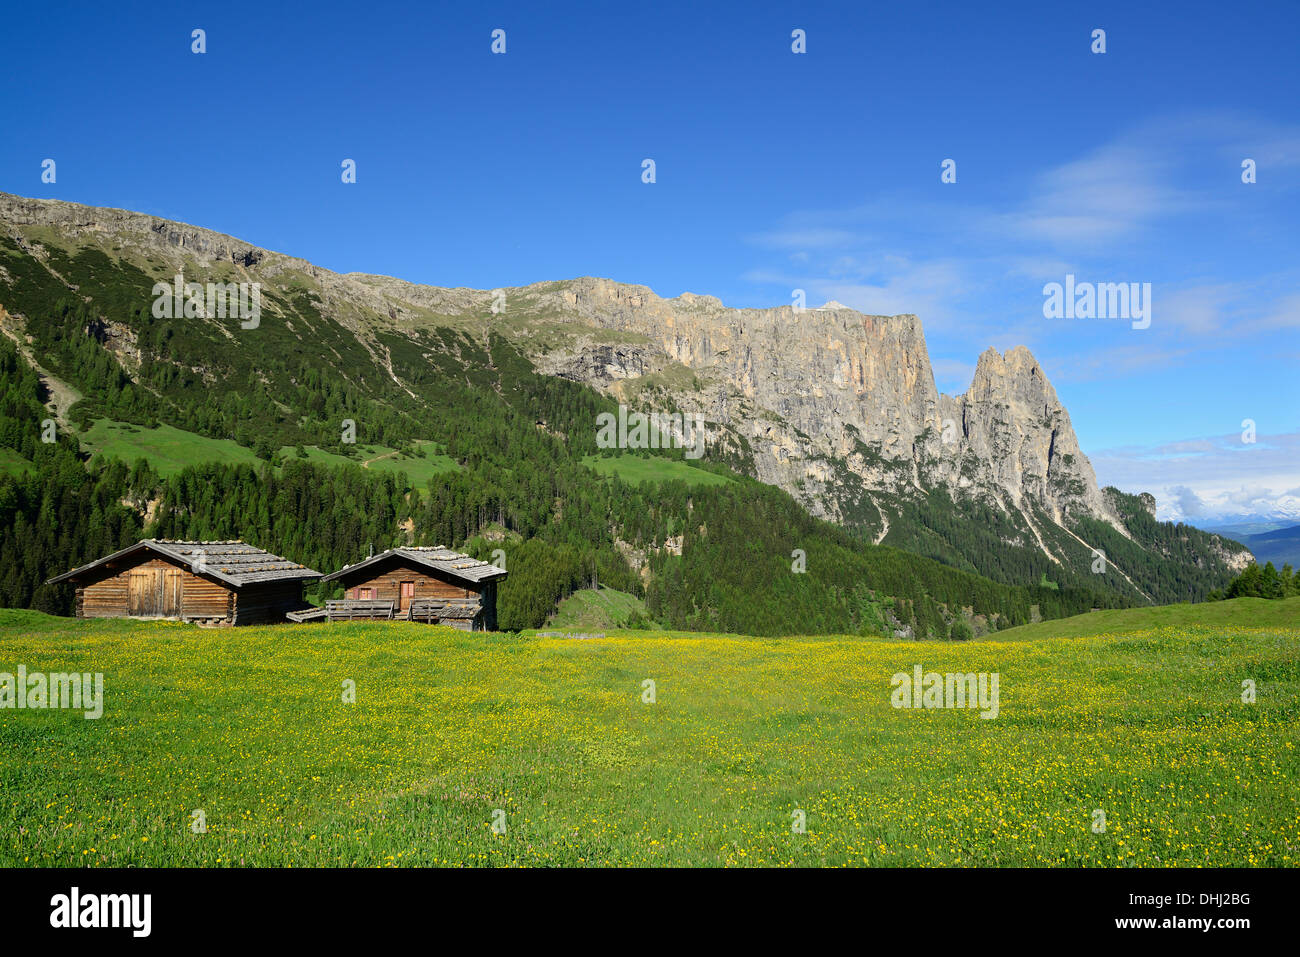 Flor de heno de prado y en frente del granero y Rosszaehne Schlern, Seiseralm, dolomitas, sitio del patrimonio mundial de la UNESCO Dolomitas, así Foto de stock